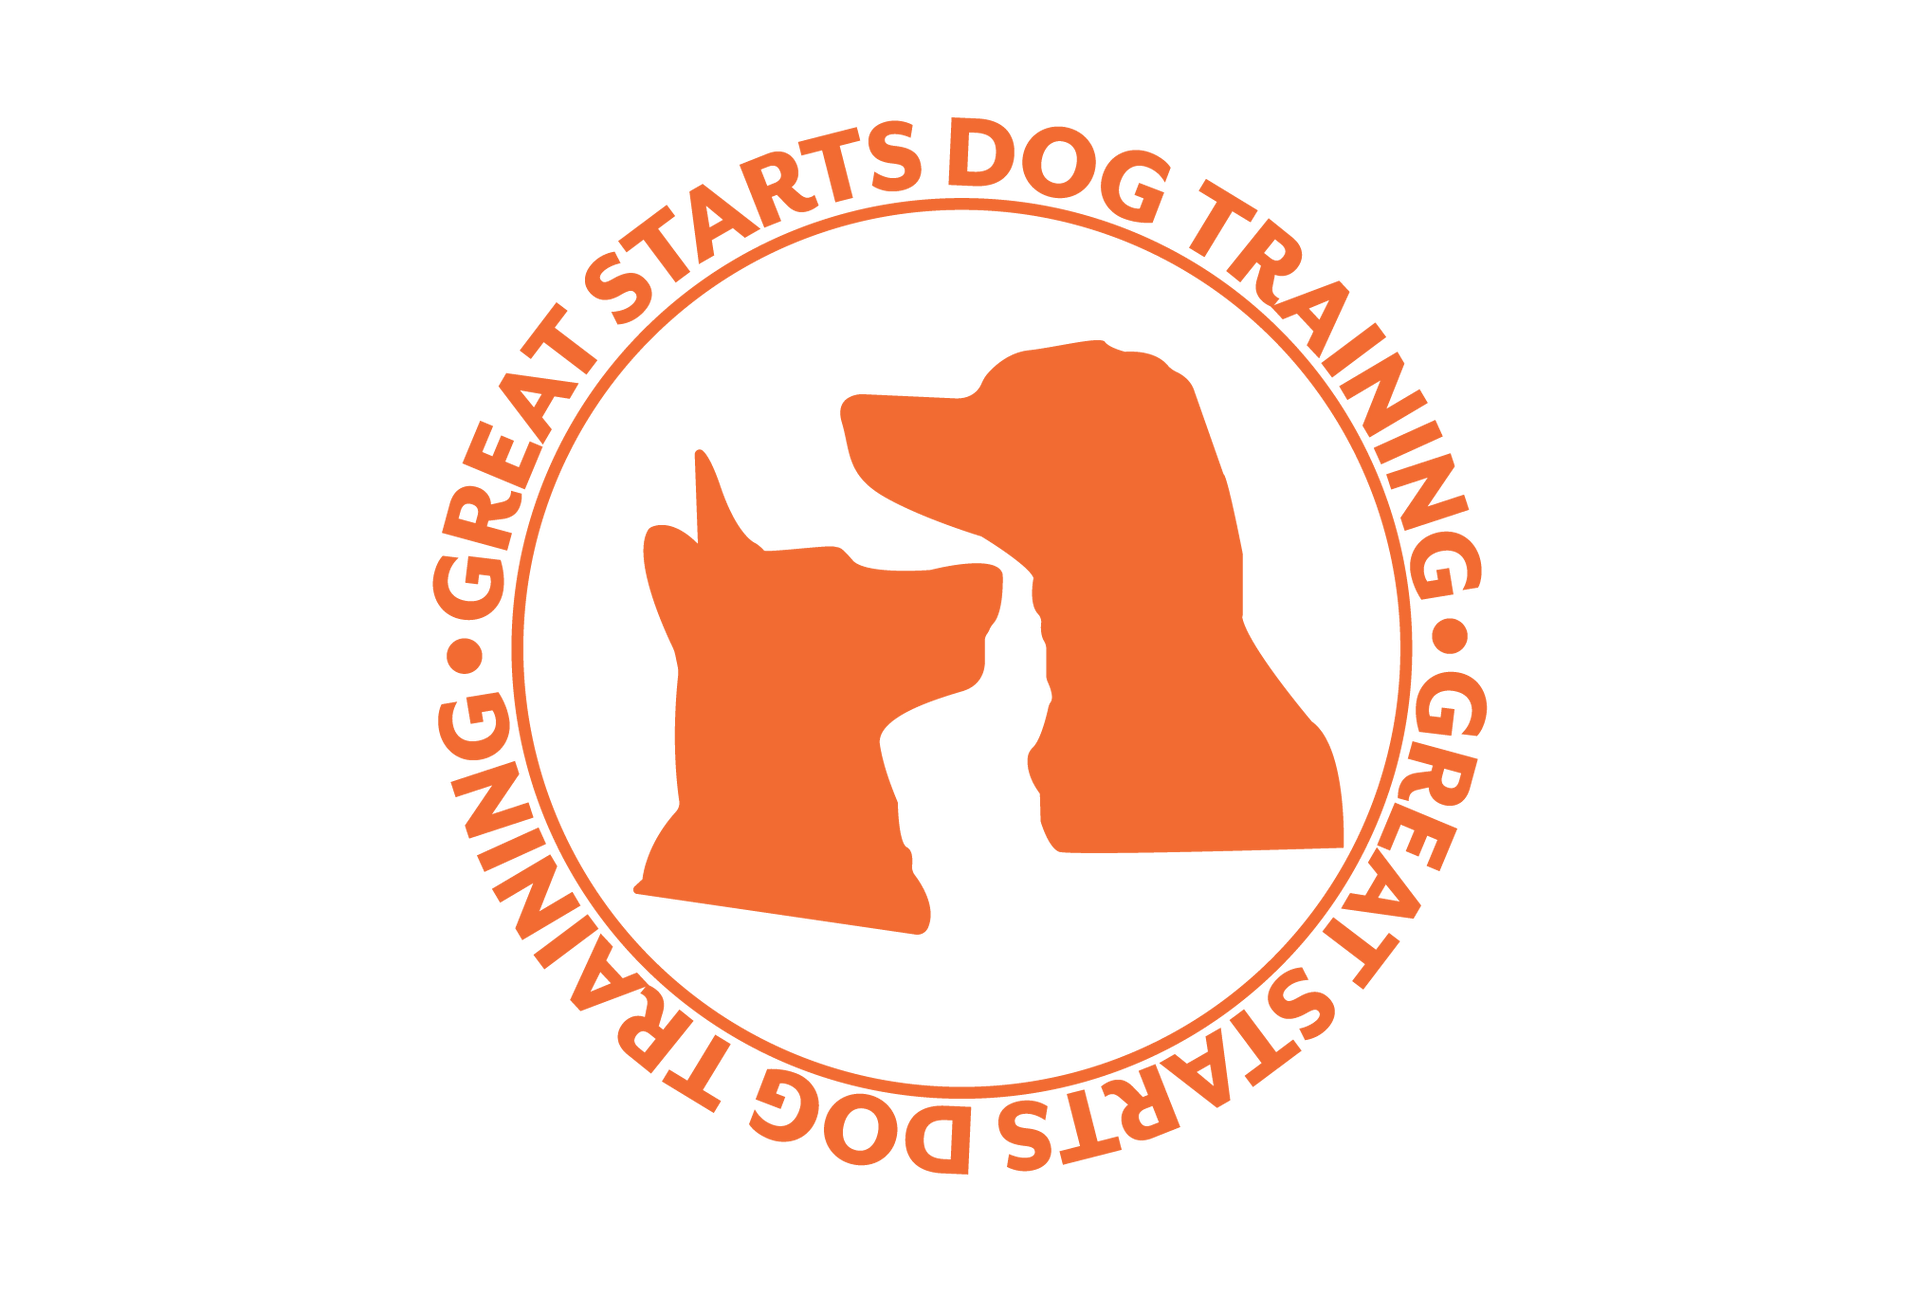 Great Starts Dog Training Business Logo